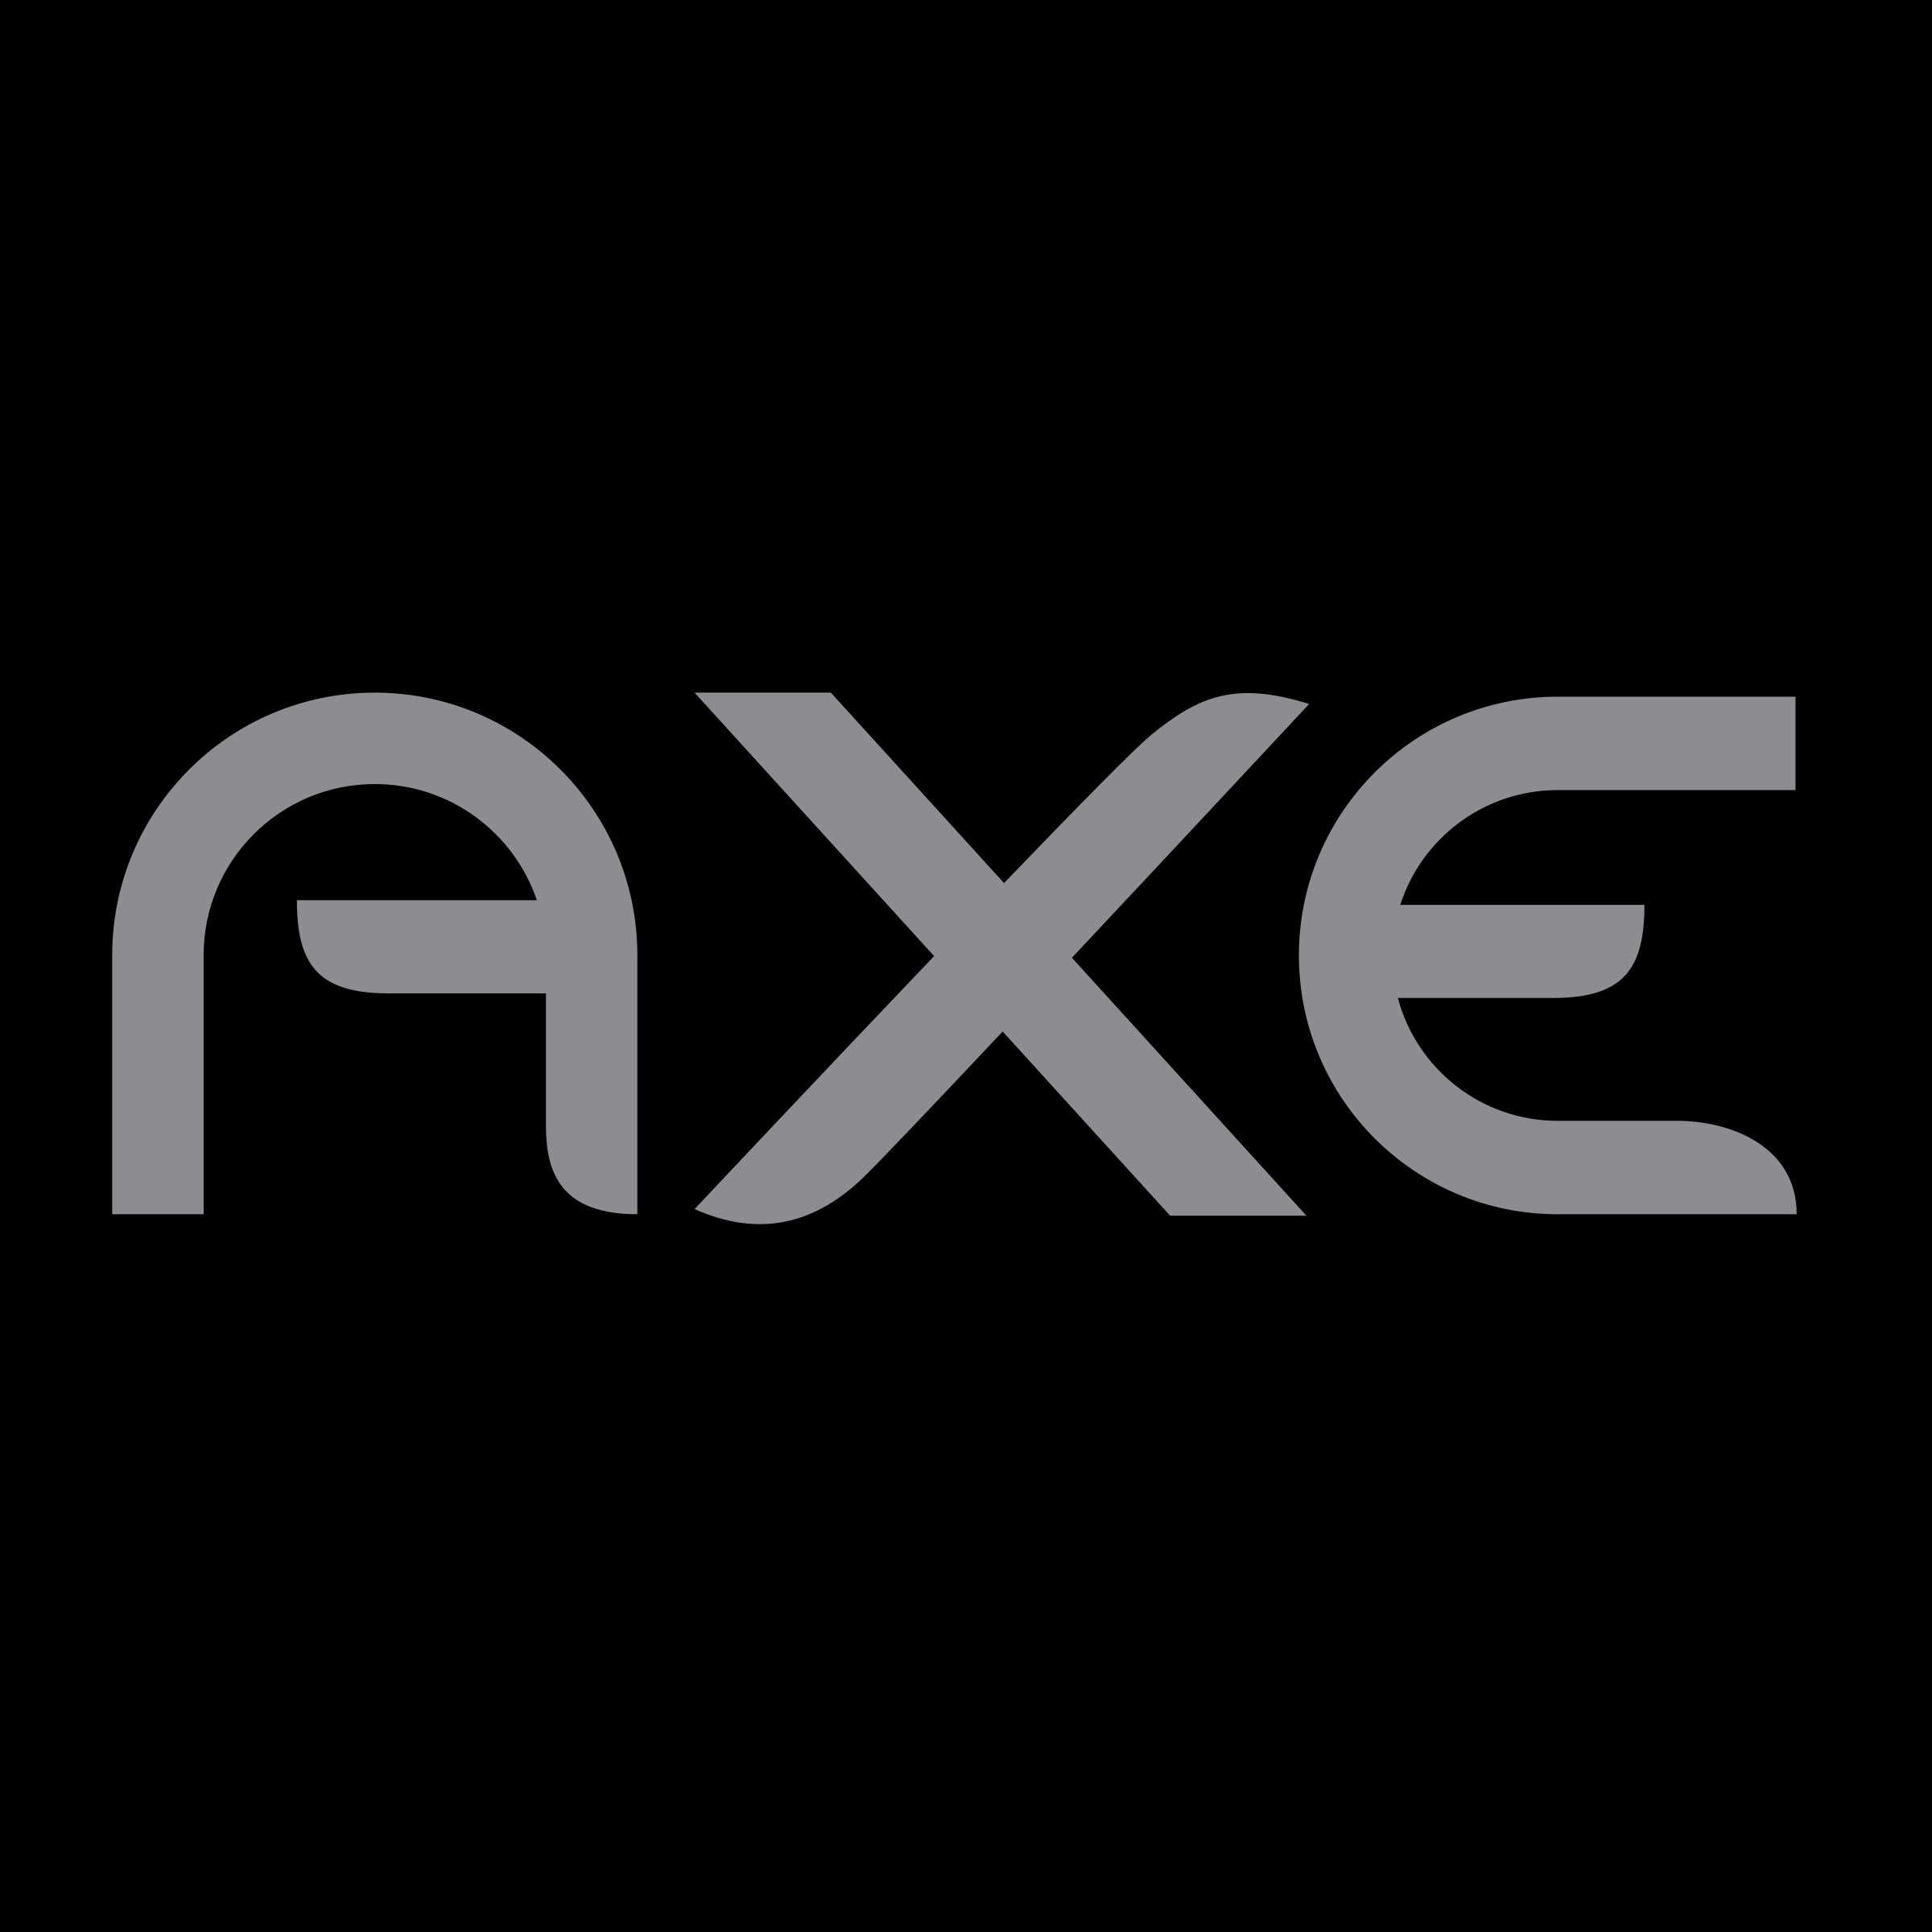 Axe Logo - Axe 01 Logo PNG Transparent & SVG Vector - Freebie Supply